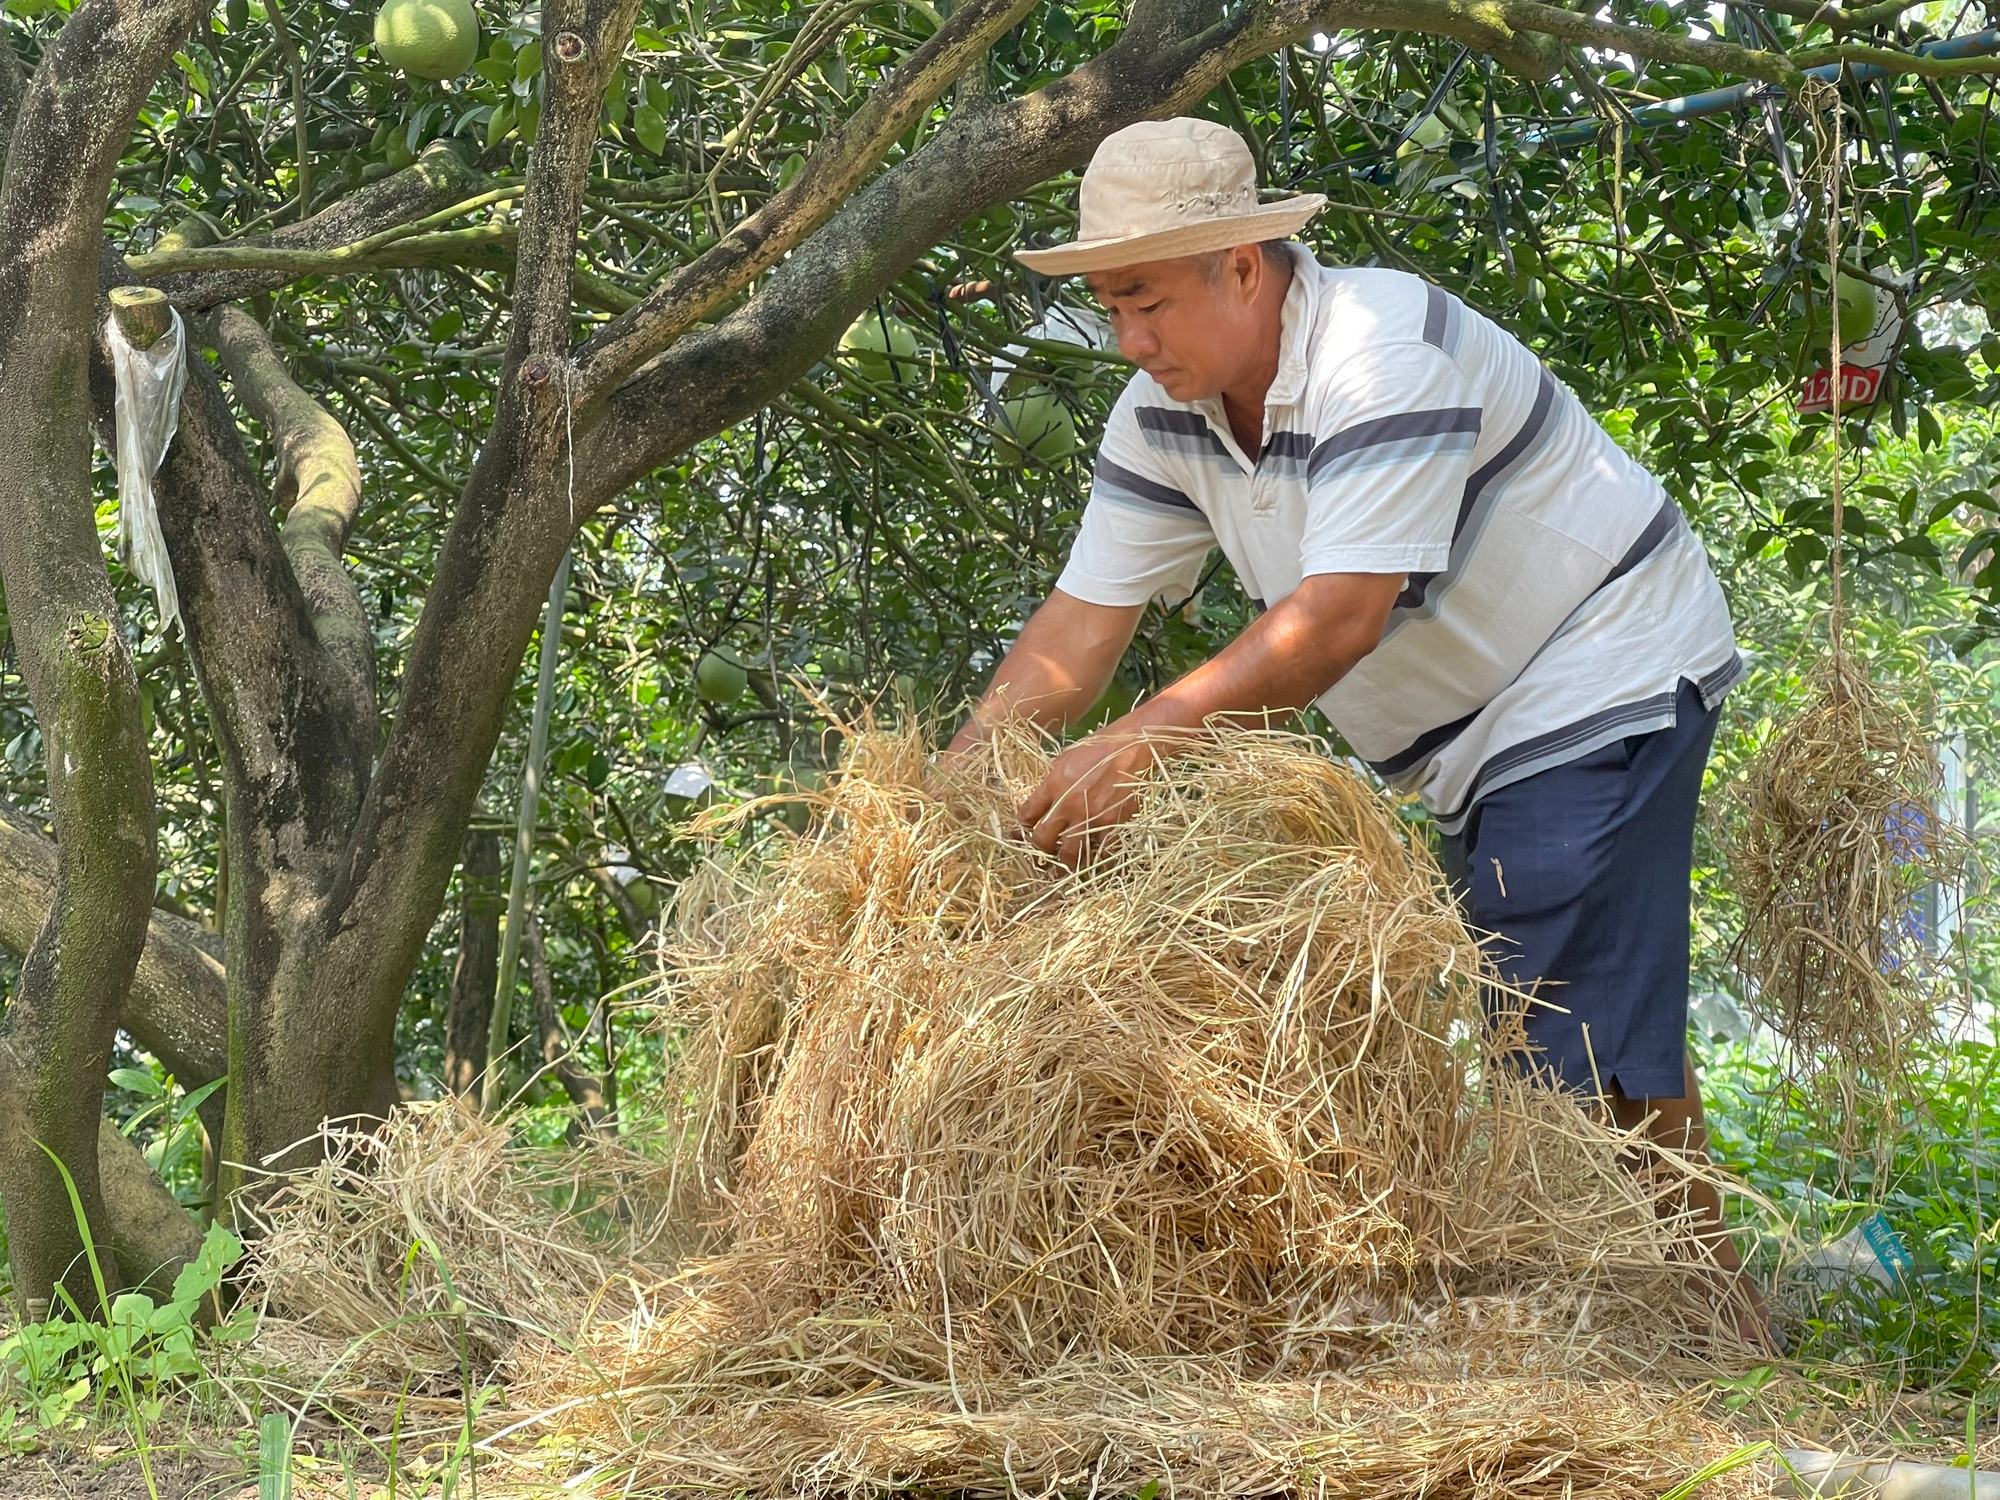 Bán rơm rạ, nông dân Đồng Nai thu về 2,5 triệu/ha - Ảnh 4.